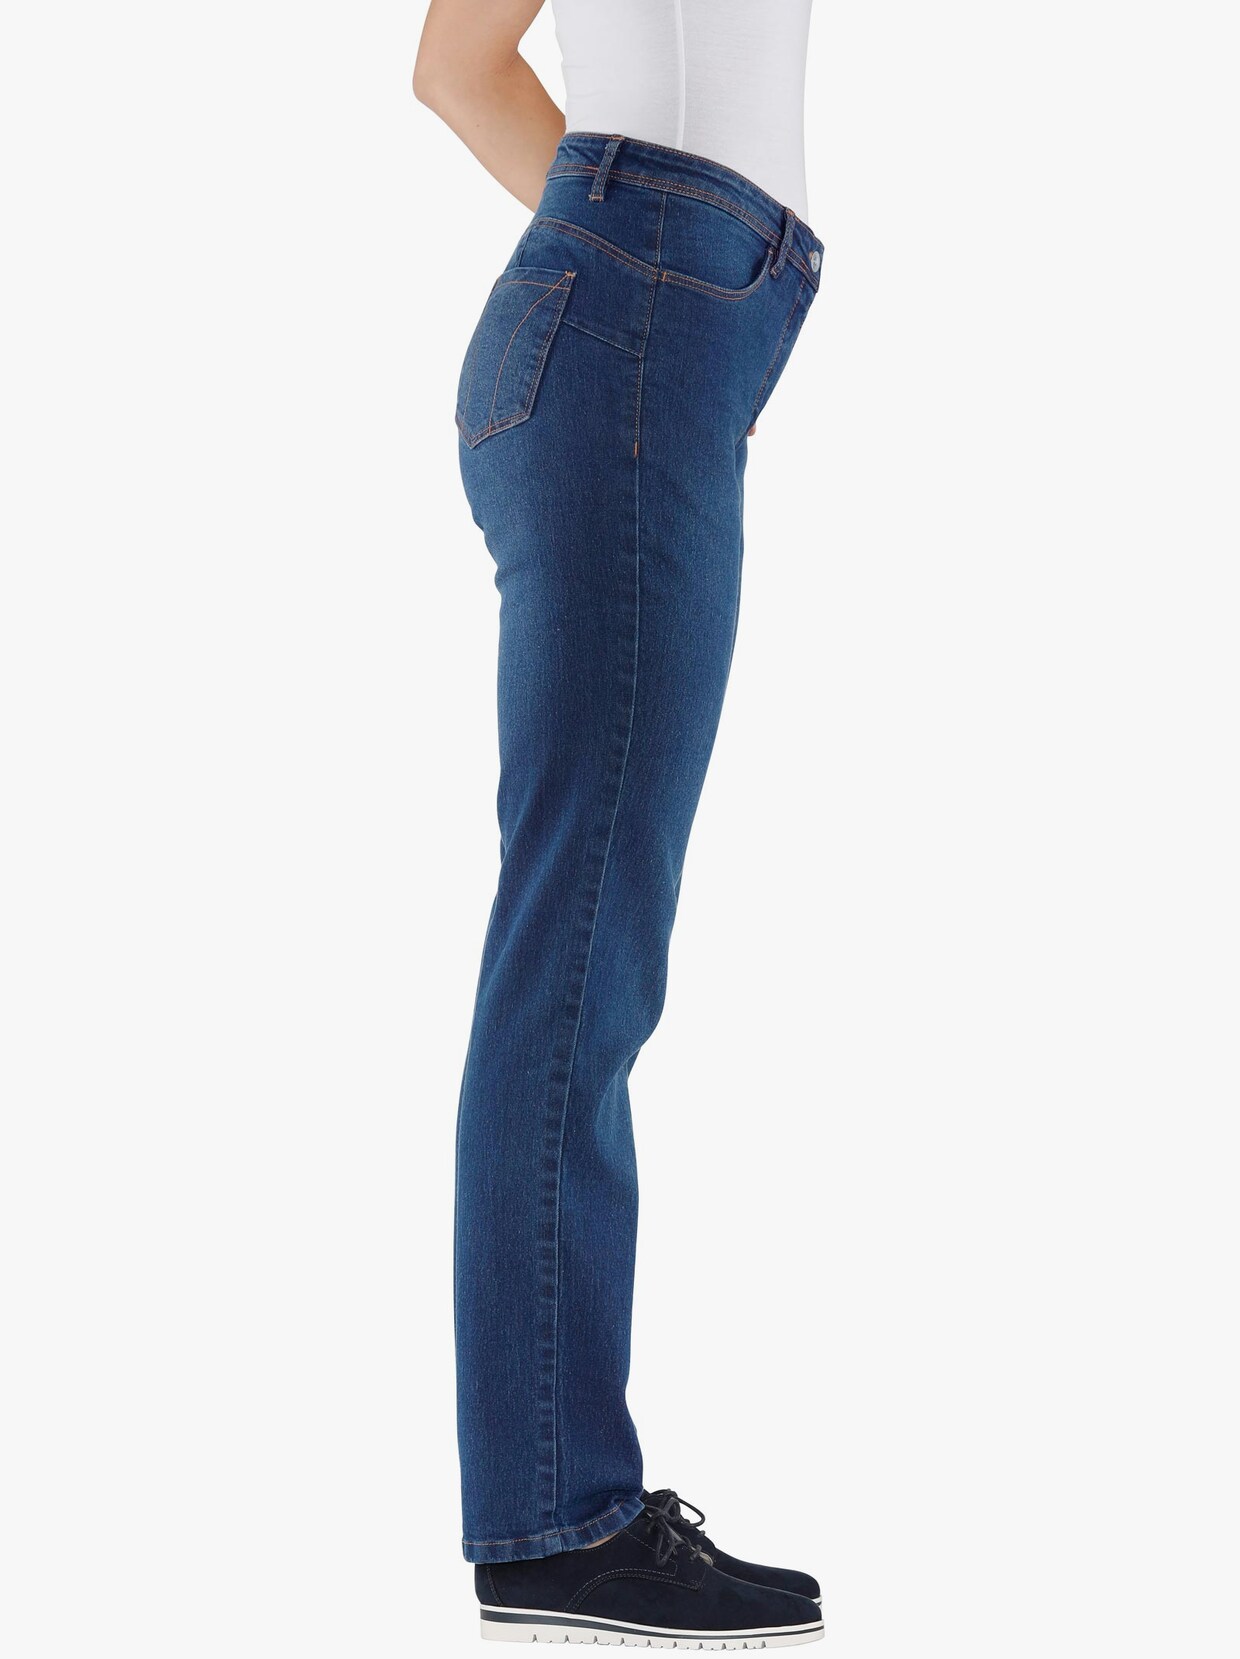 jeans - blue-stonewashed